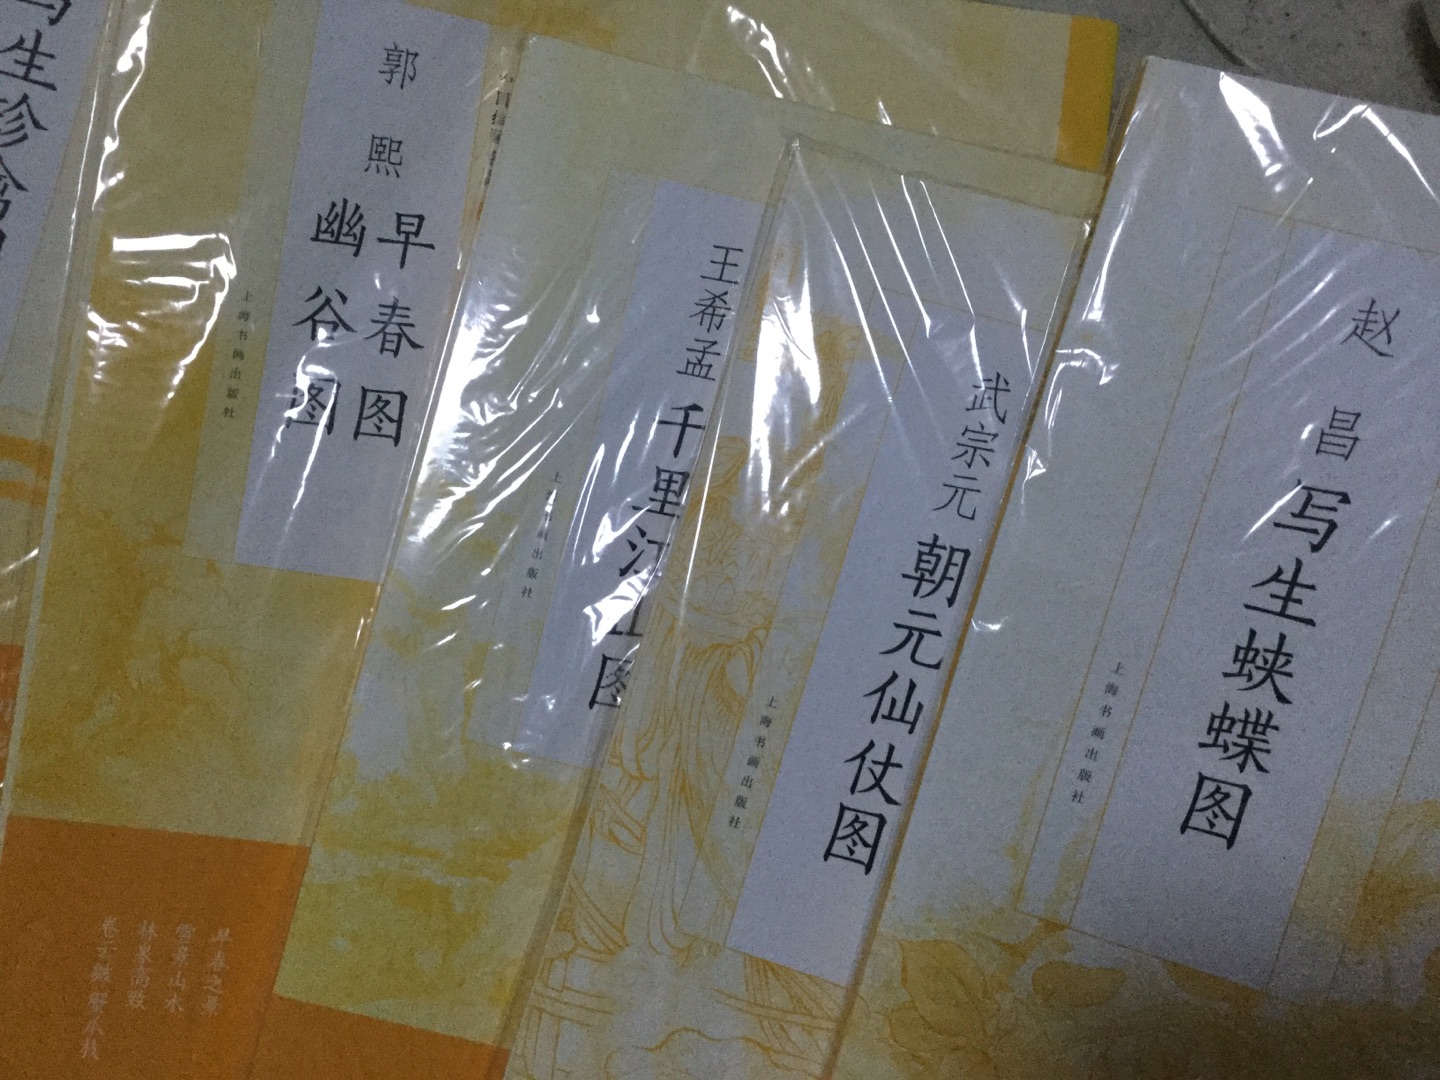 比较喜欢买上海书画出版社的书，色正，印刷好。